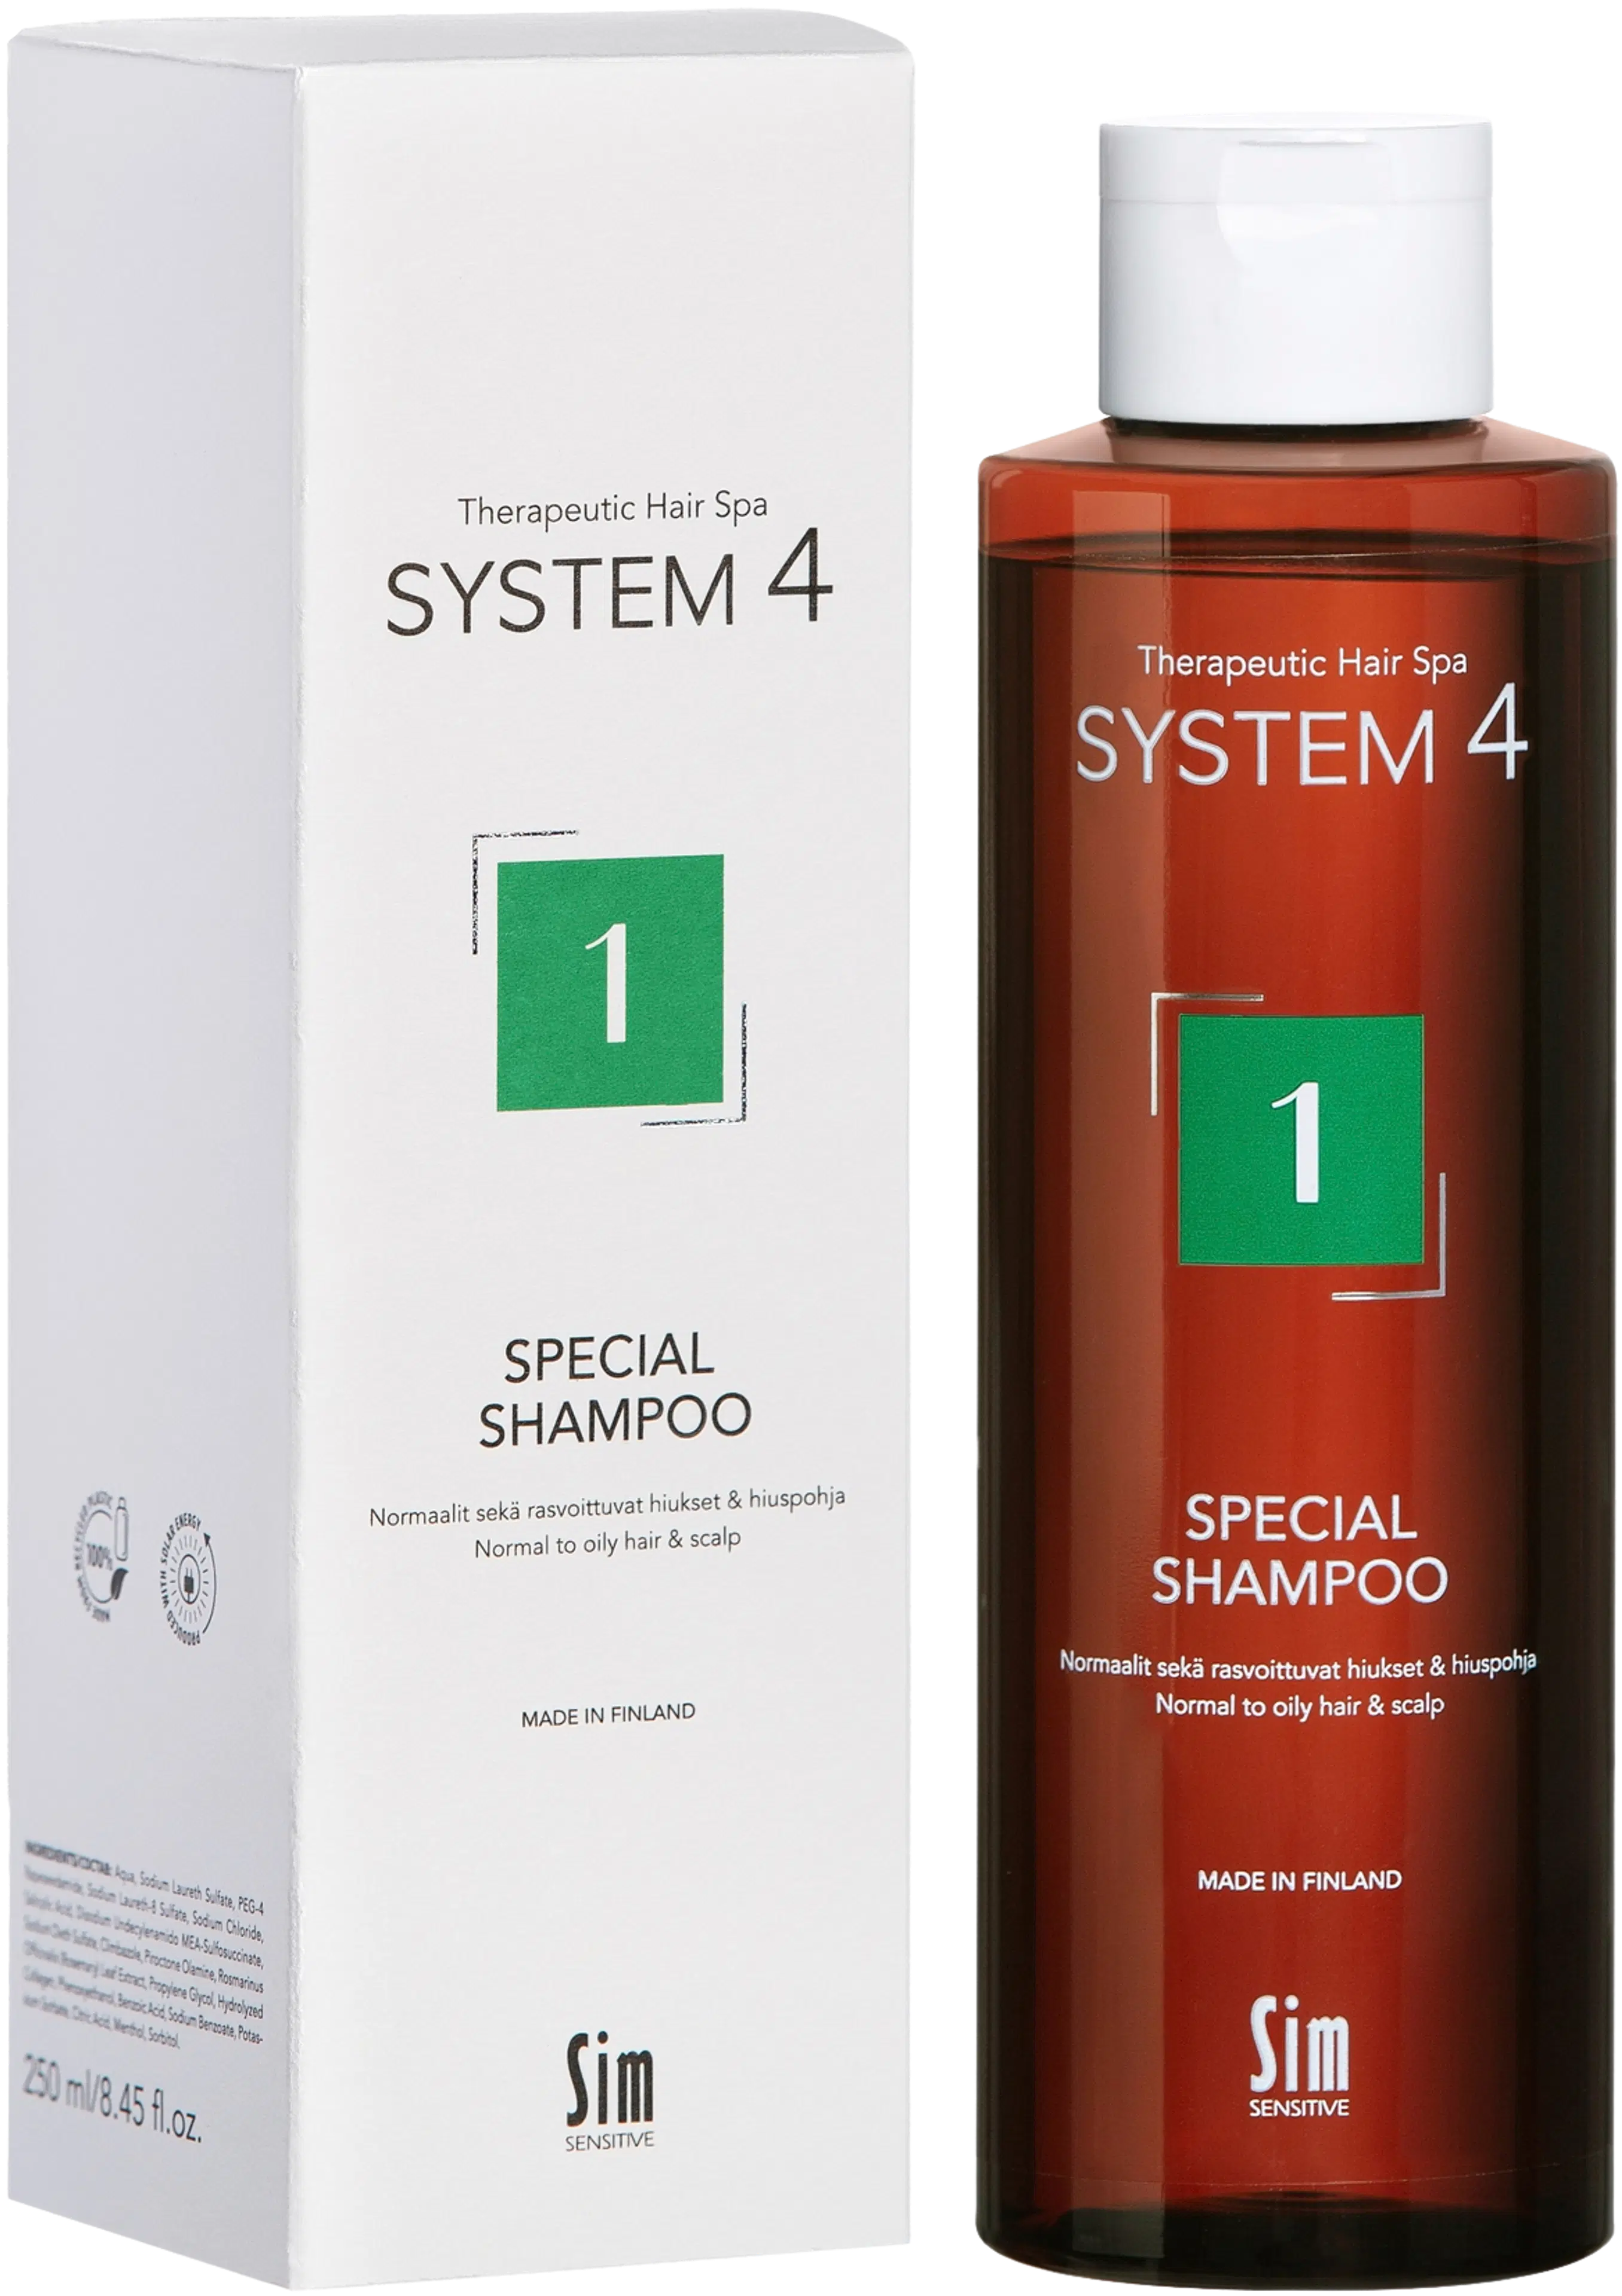 Sim Sensitive System4, 1 Special Shampoo 250 ml